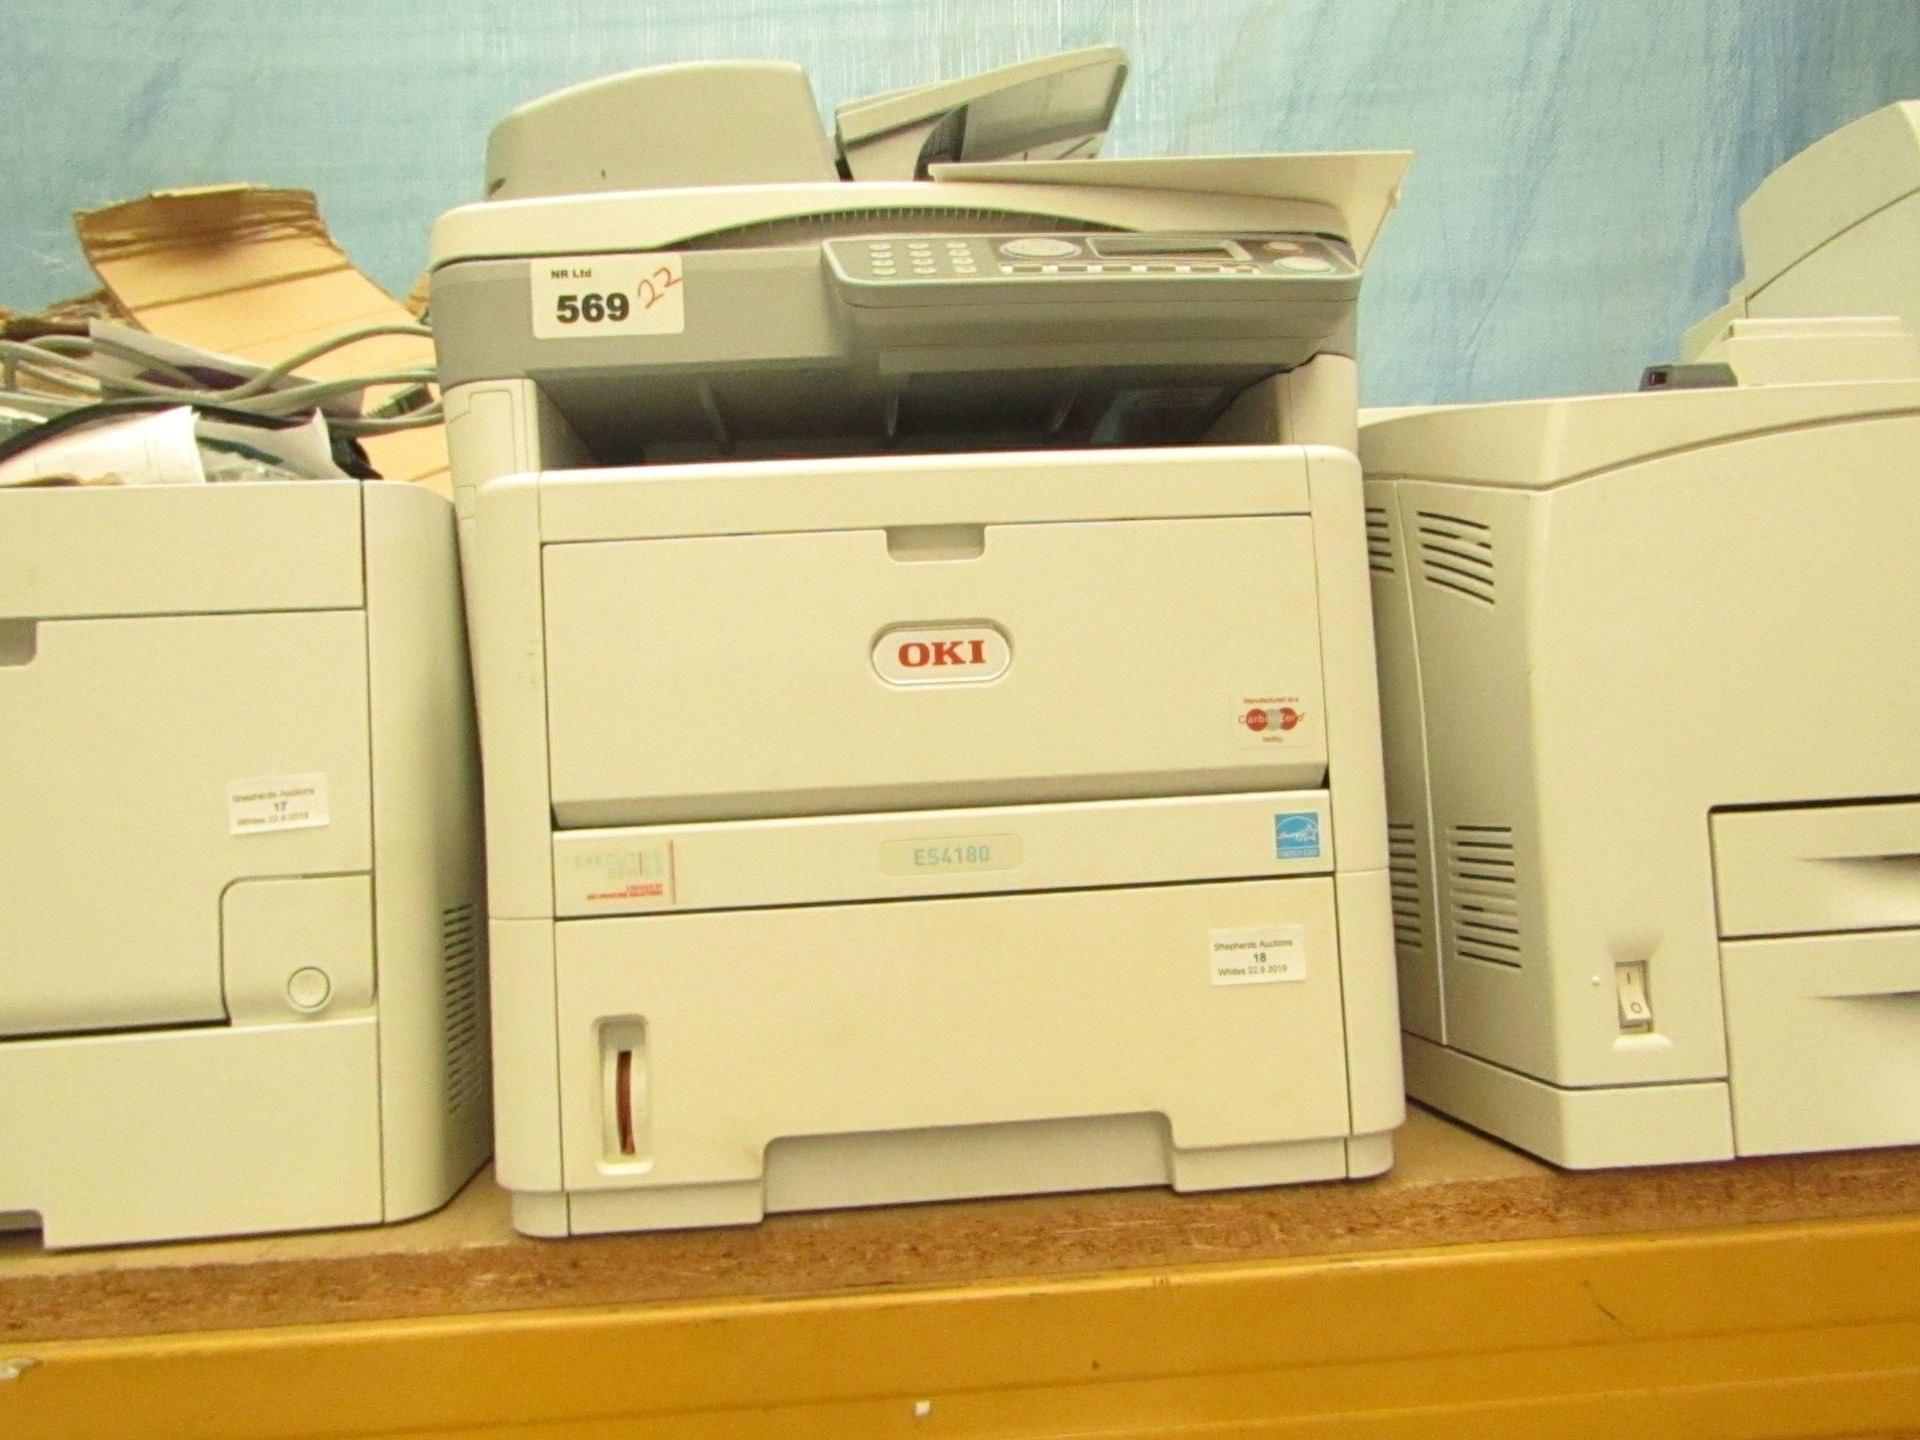 Oki ES4180 Printer.Untested